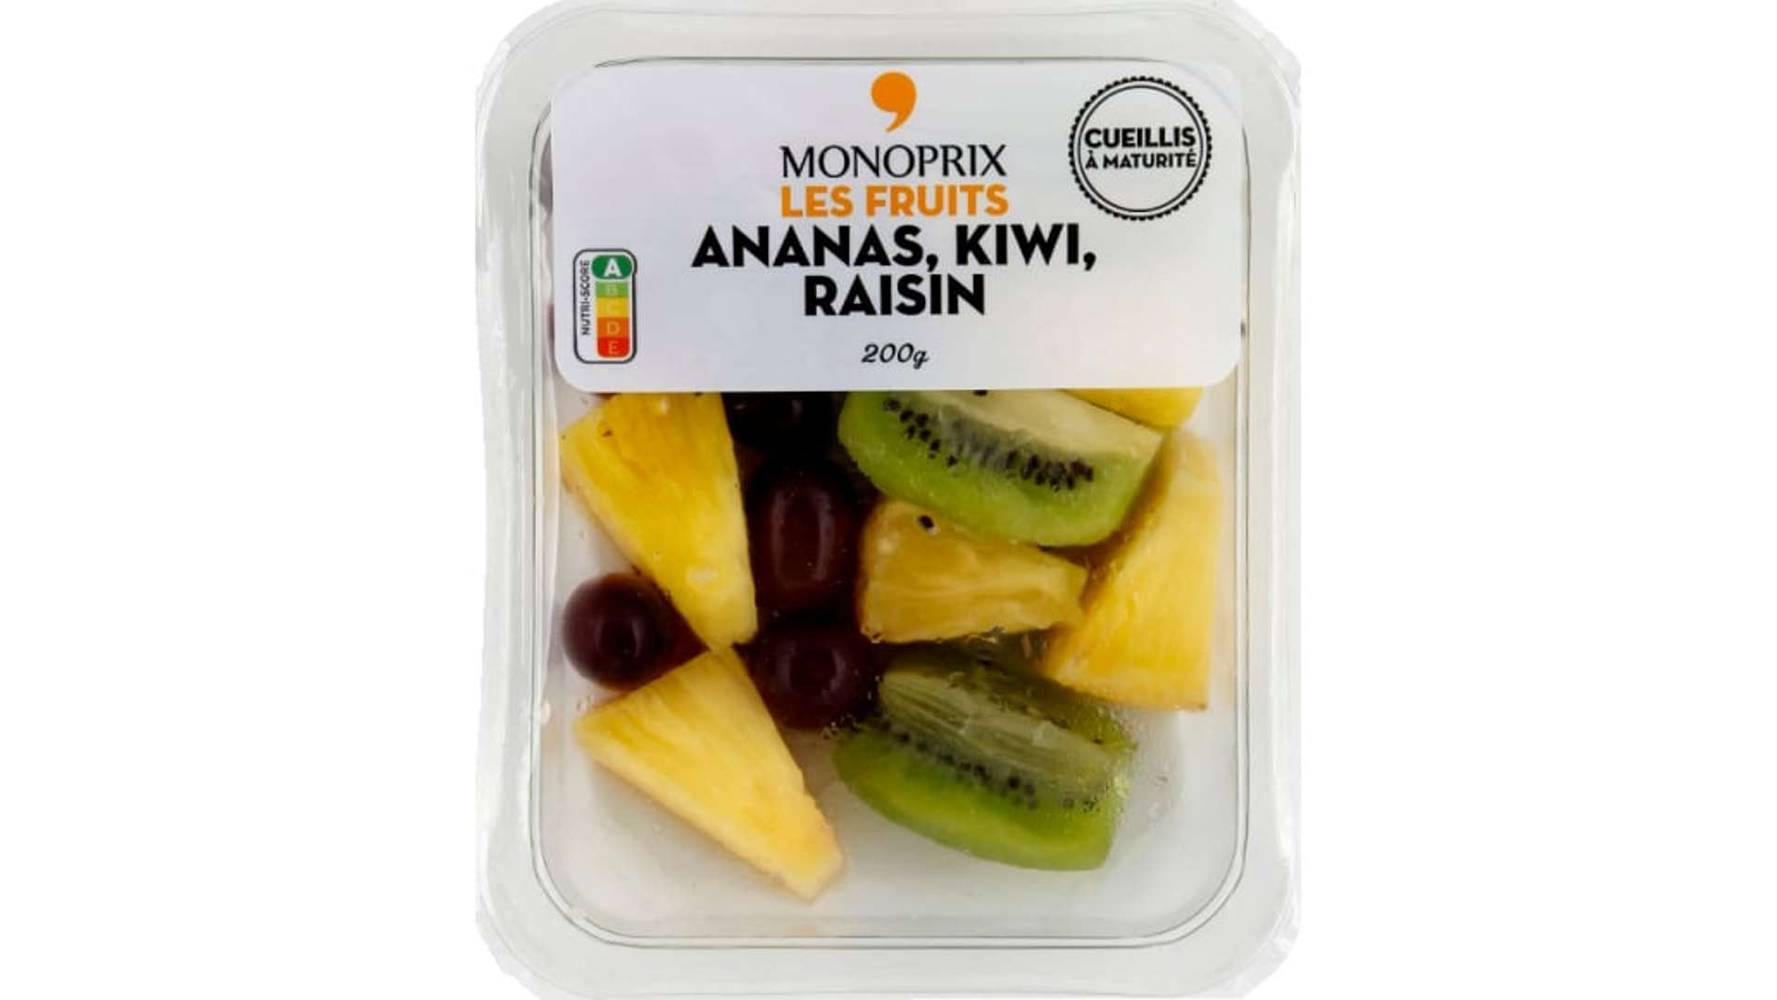 MONOPRIX Ananas, Kiwi, raisin 200g